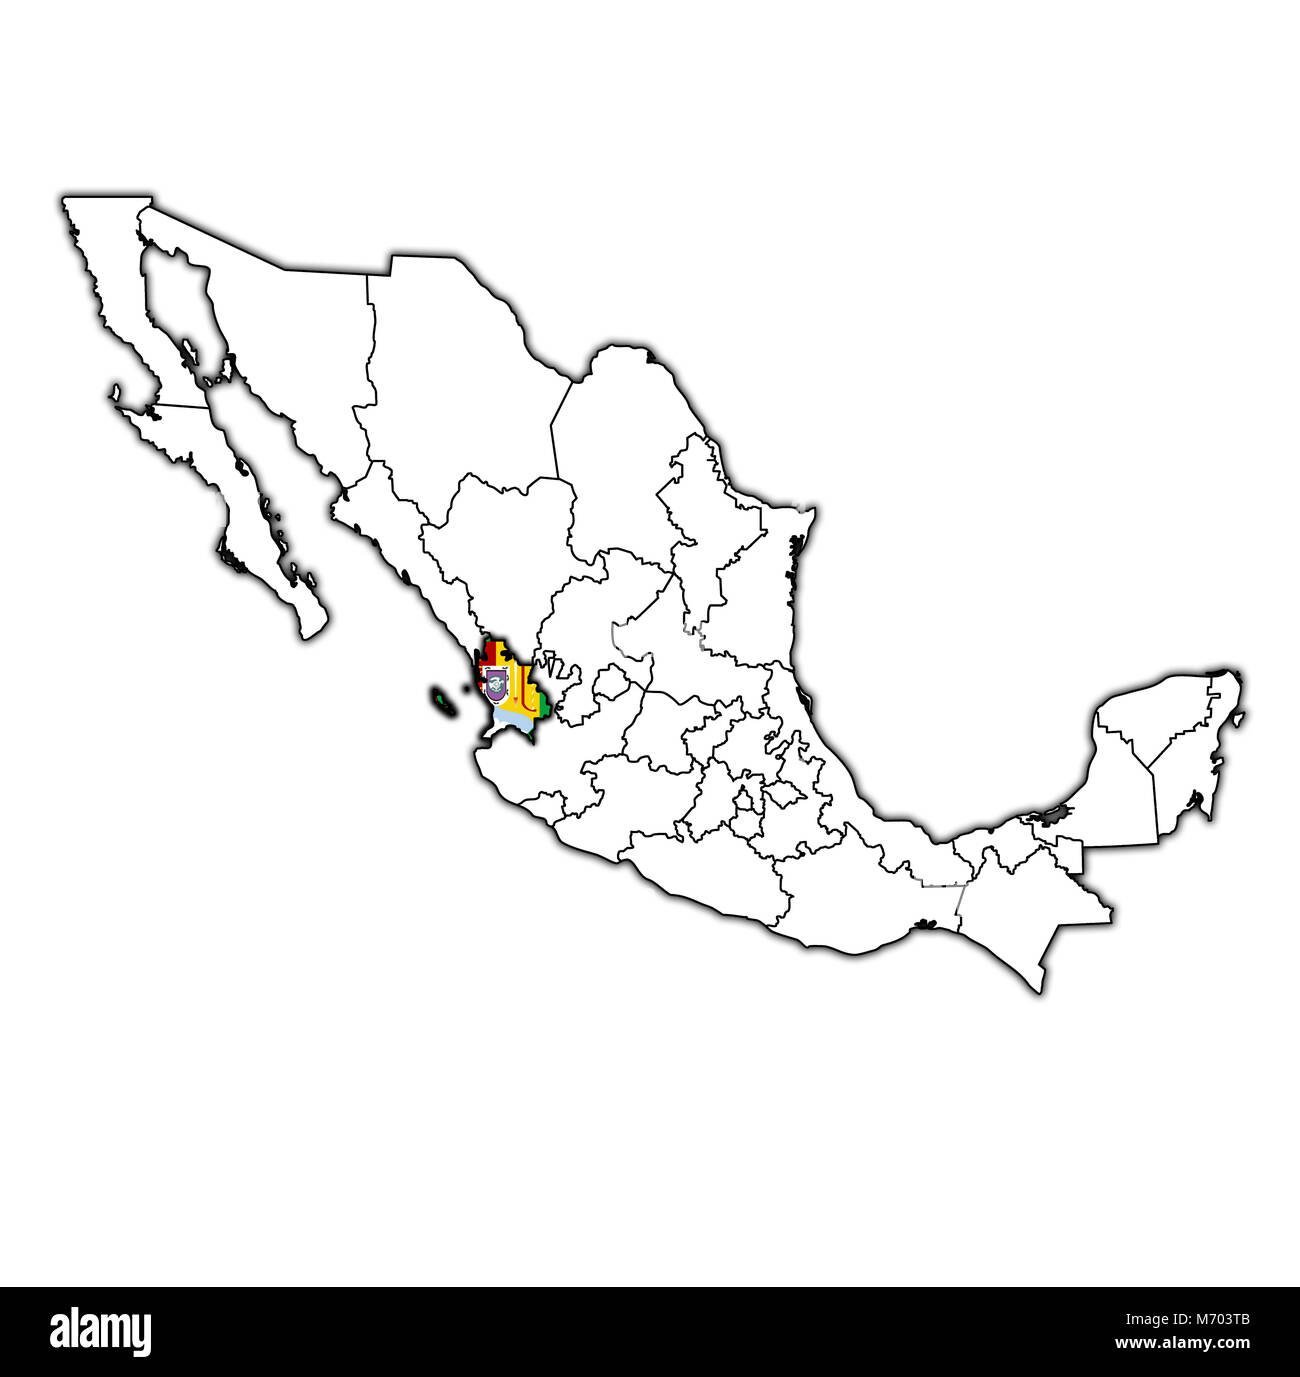 Emblem von Nayarit Zustand auf Karte mit administrativen Abteilungen und Grenzen von Mexiko Stockfoto